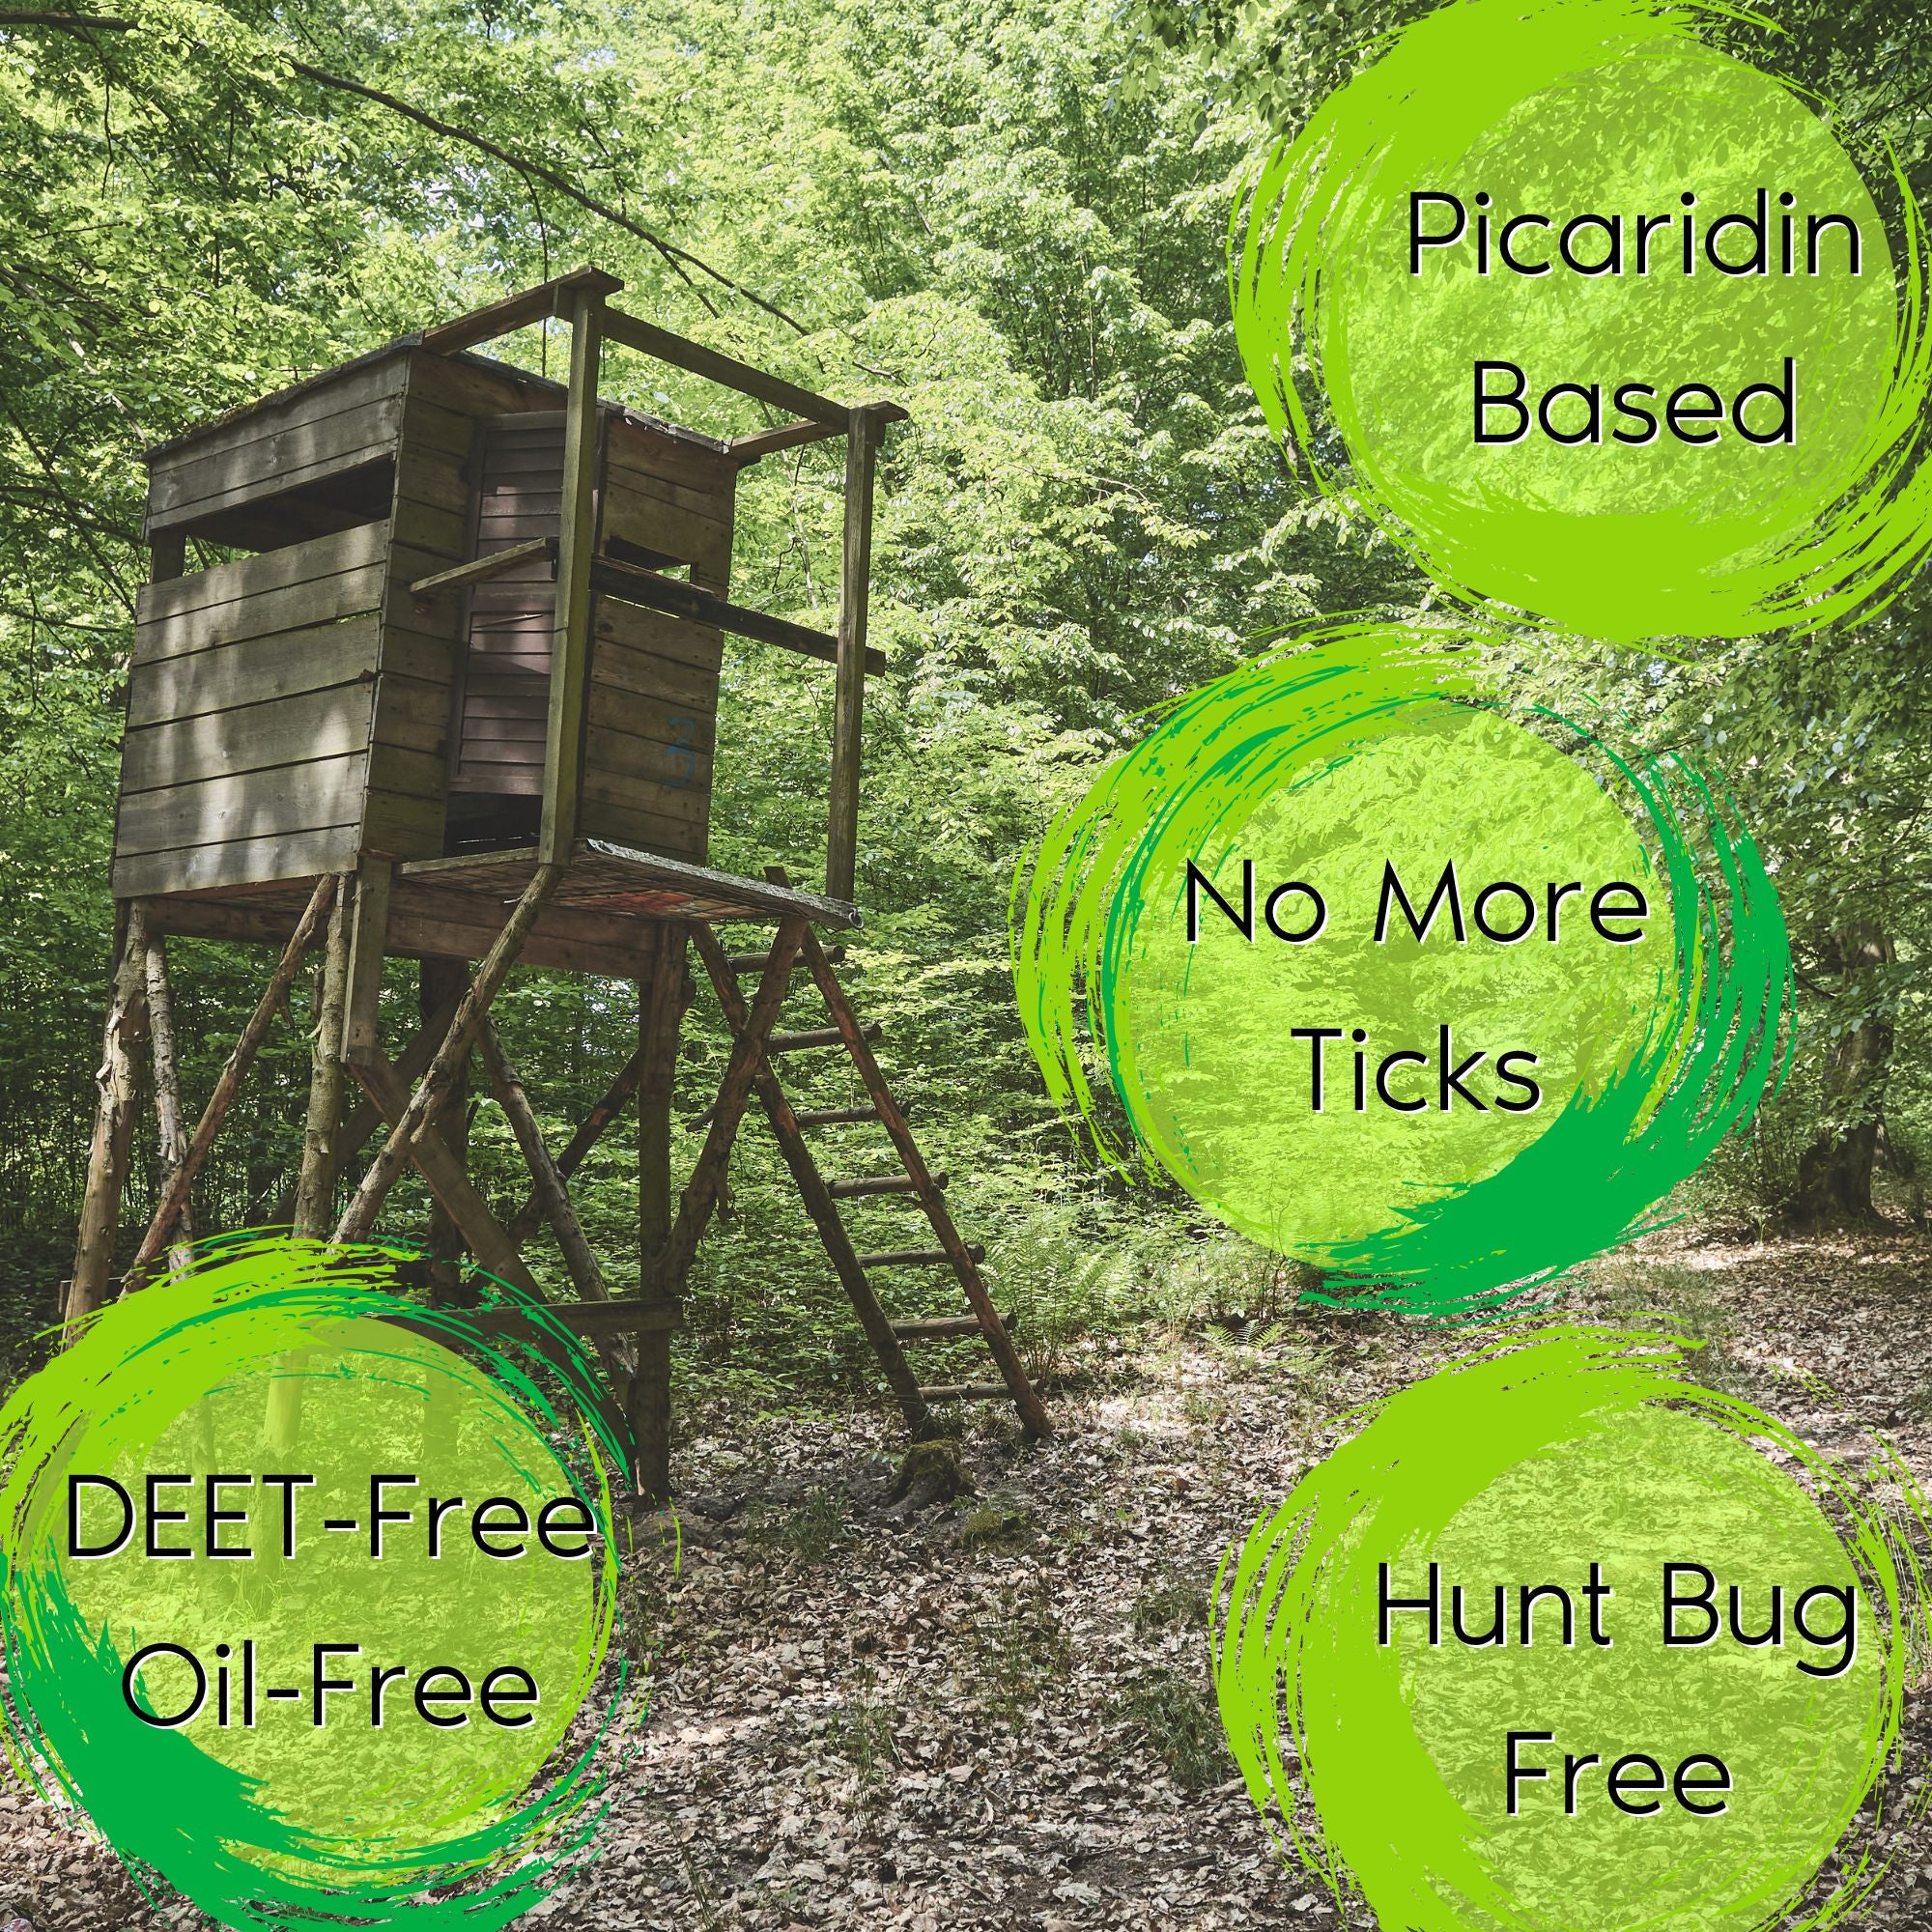 Realtree Buckmaster Bundle; Insect Repellent PLUS Deer Attractants